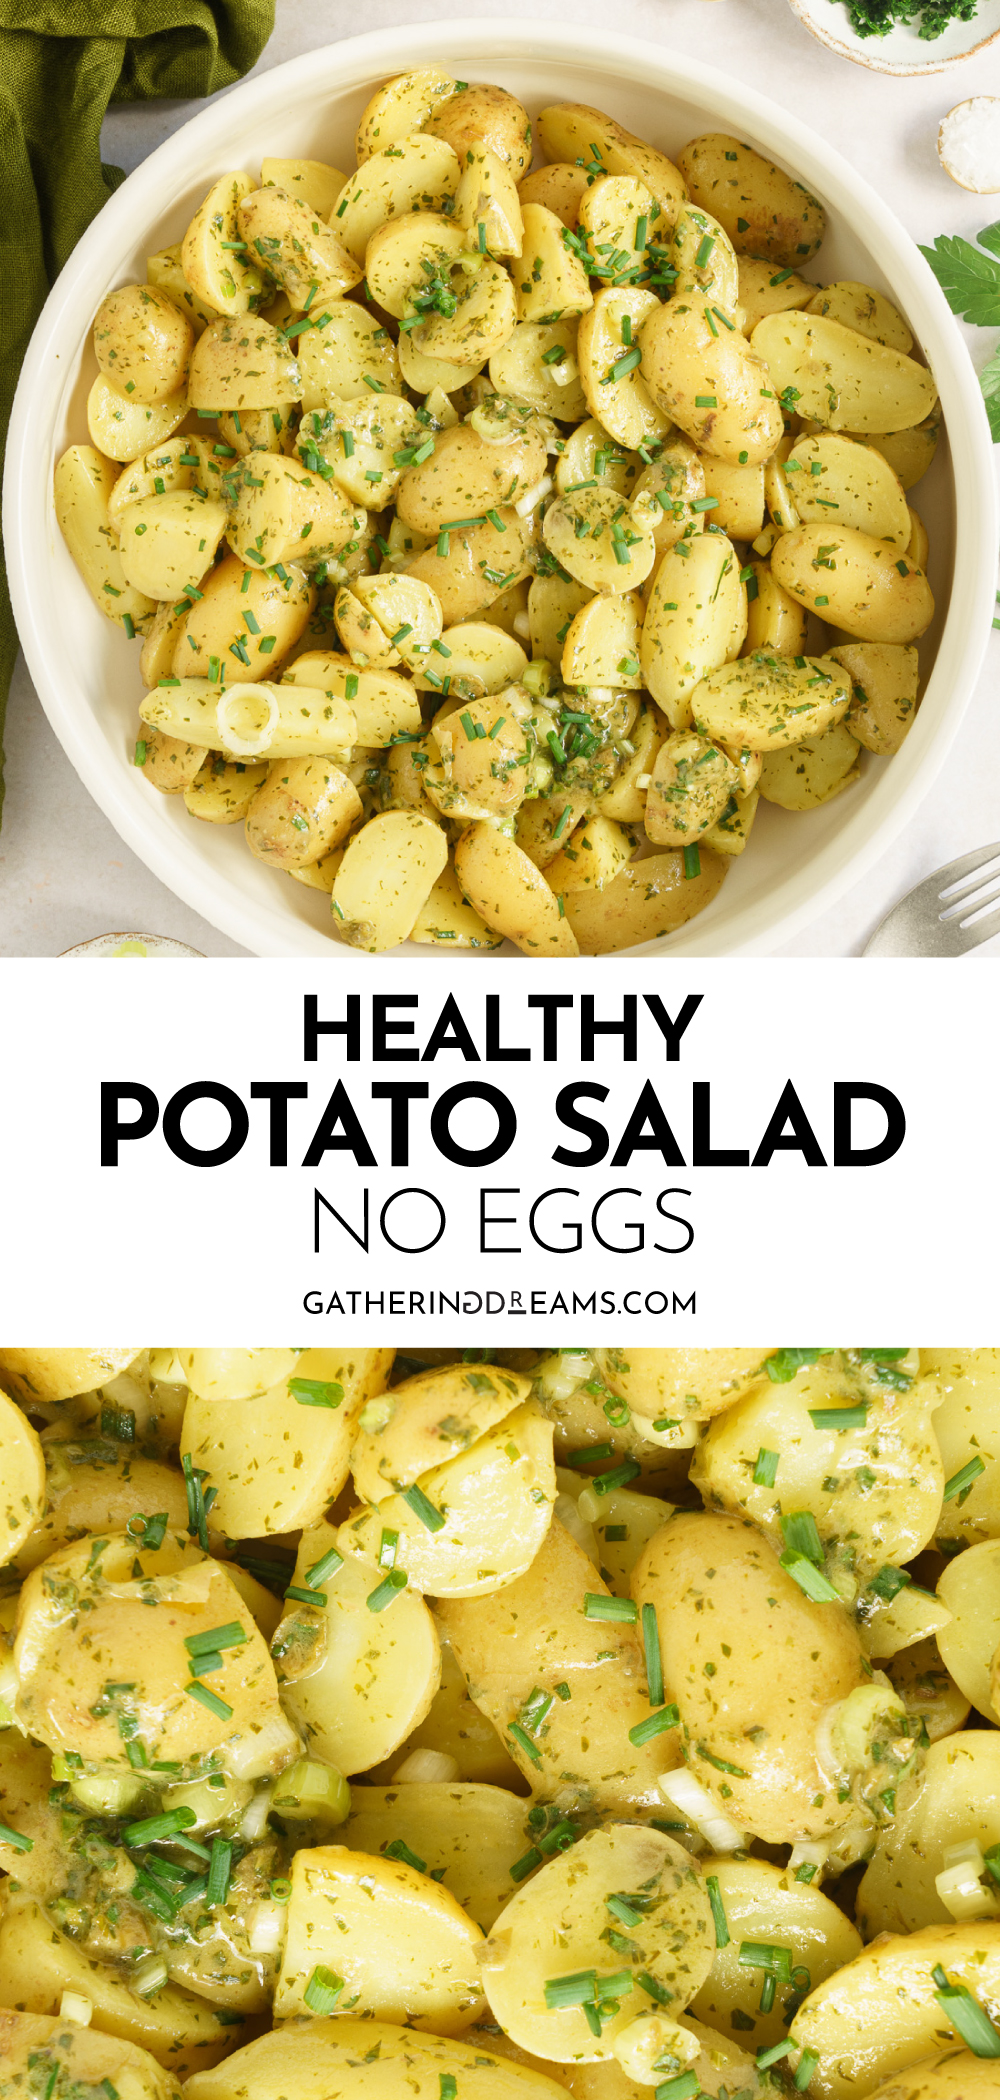 Healthy Potato Salad (No Eggs) - Gathering Dreams